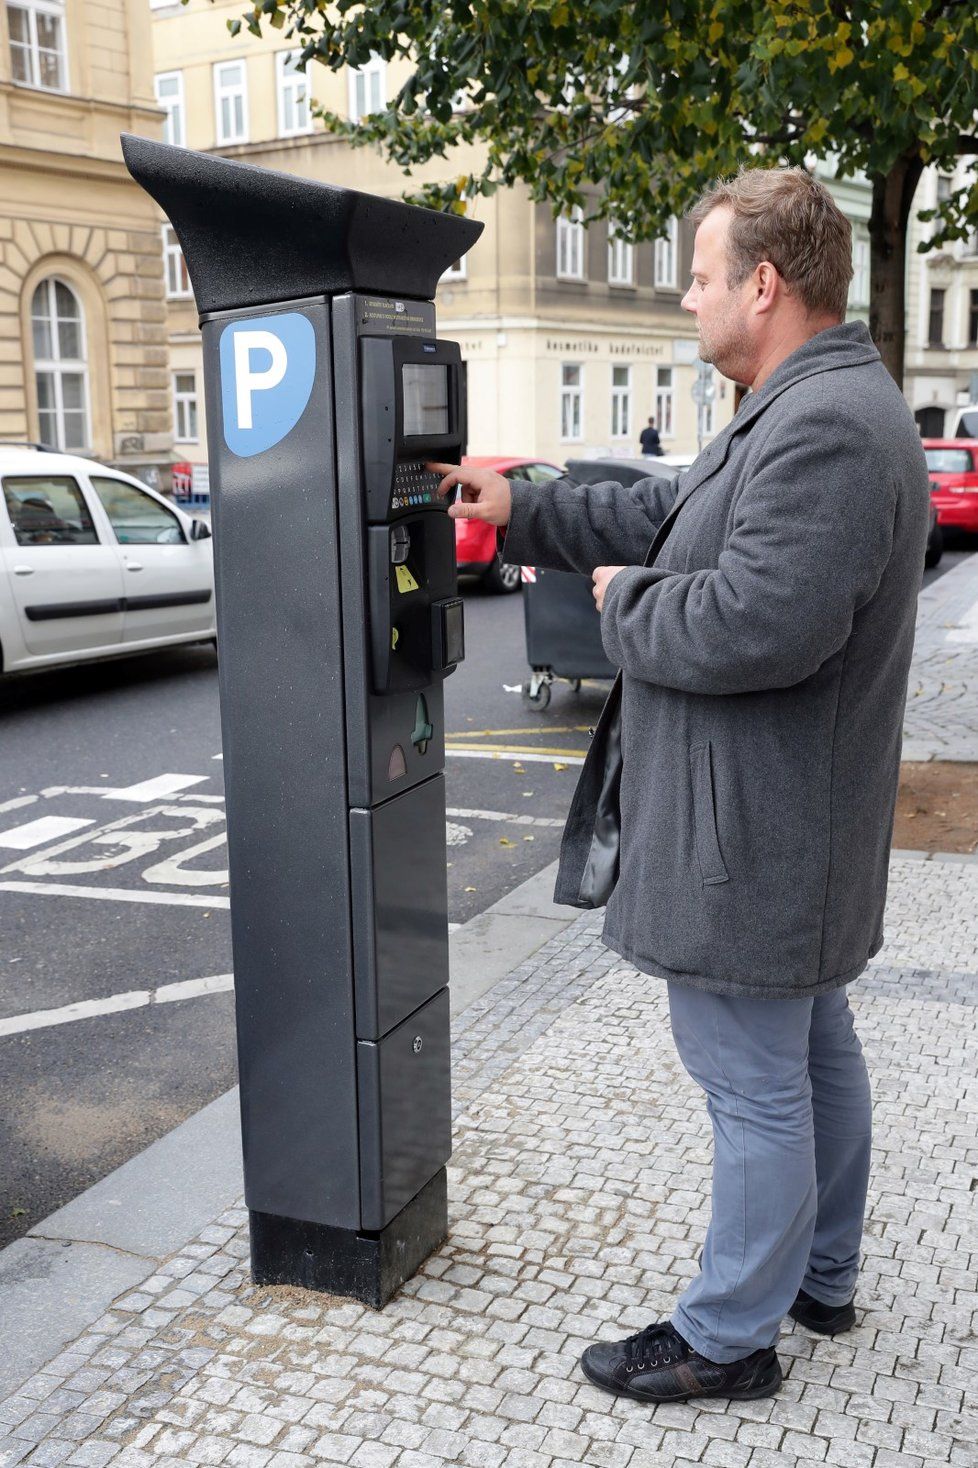 Od 28. dubna od 00:00 hod. už řidiči budou muset platit za parkování v parkovacích zónách nejen v Praze. To bylo kvůli pandemii koronaviru dočasně zrušené.